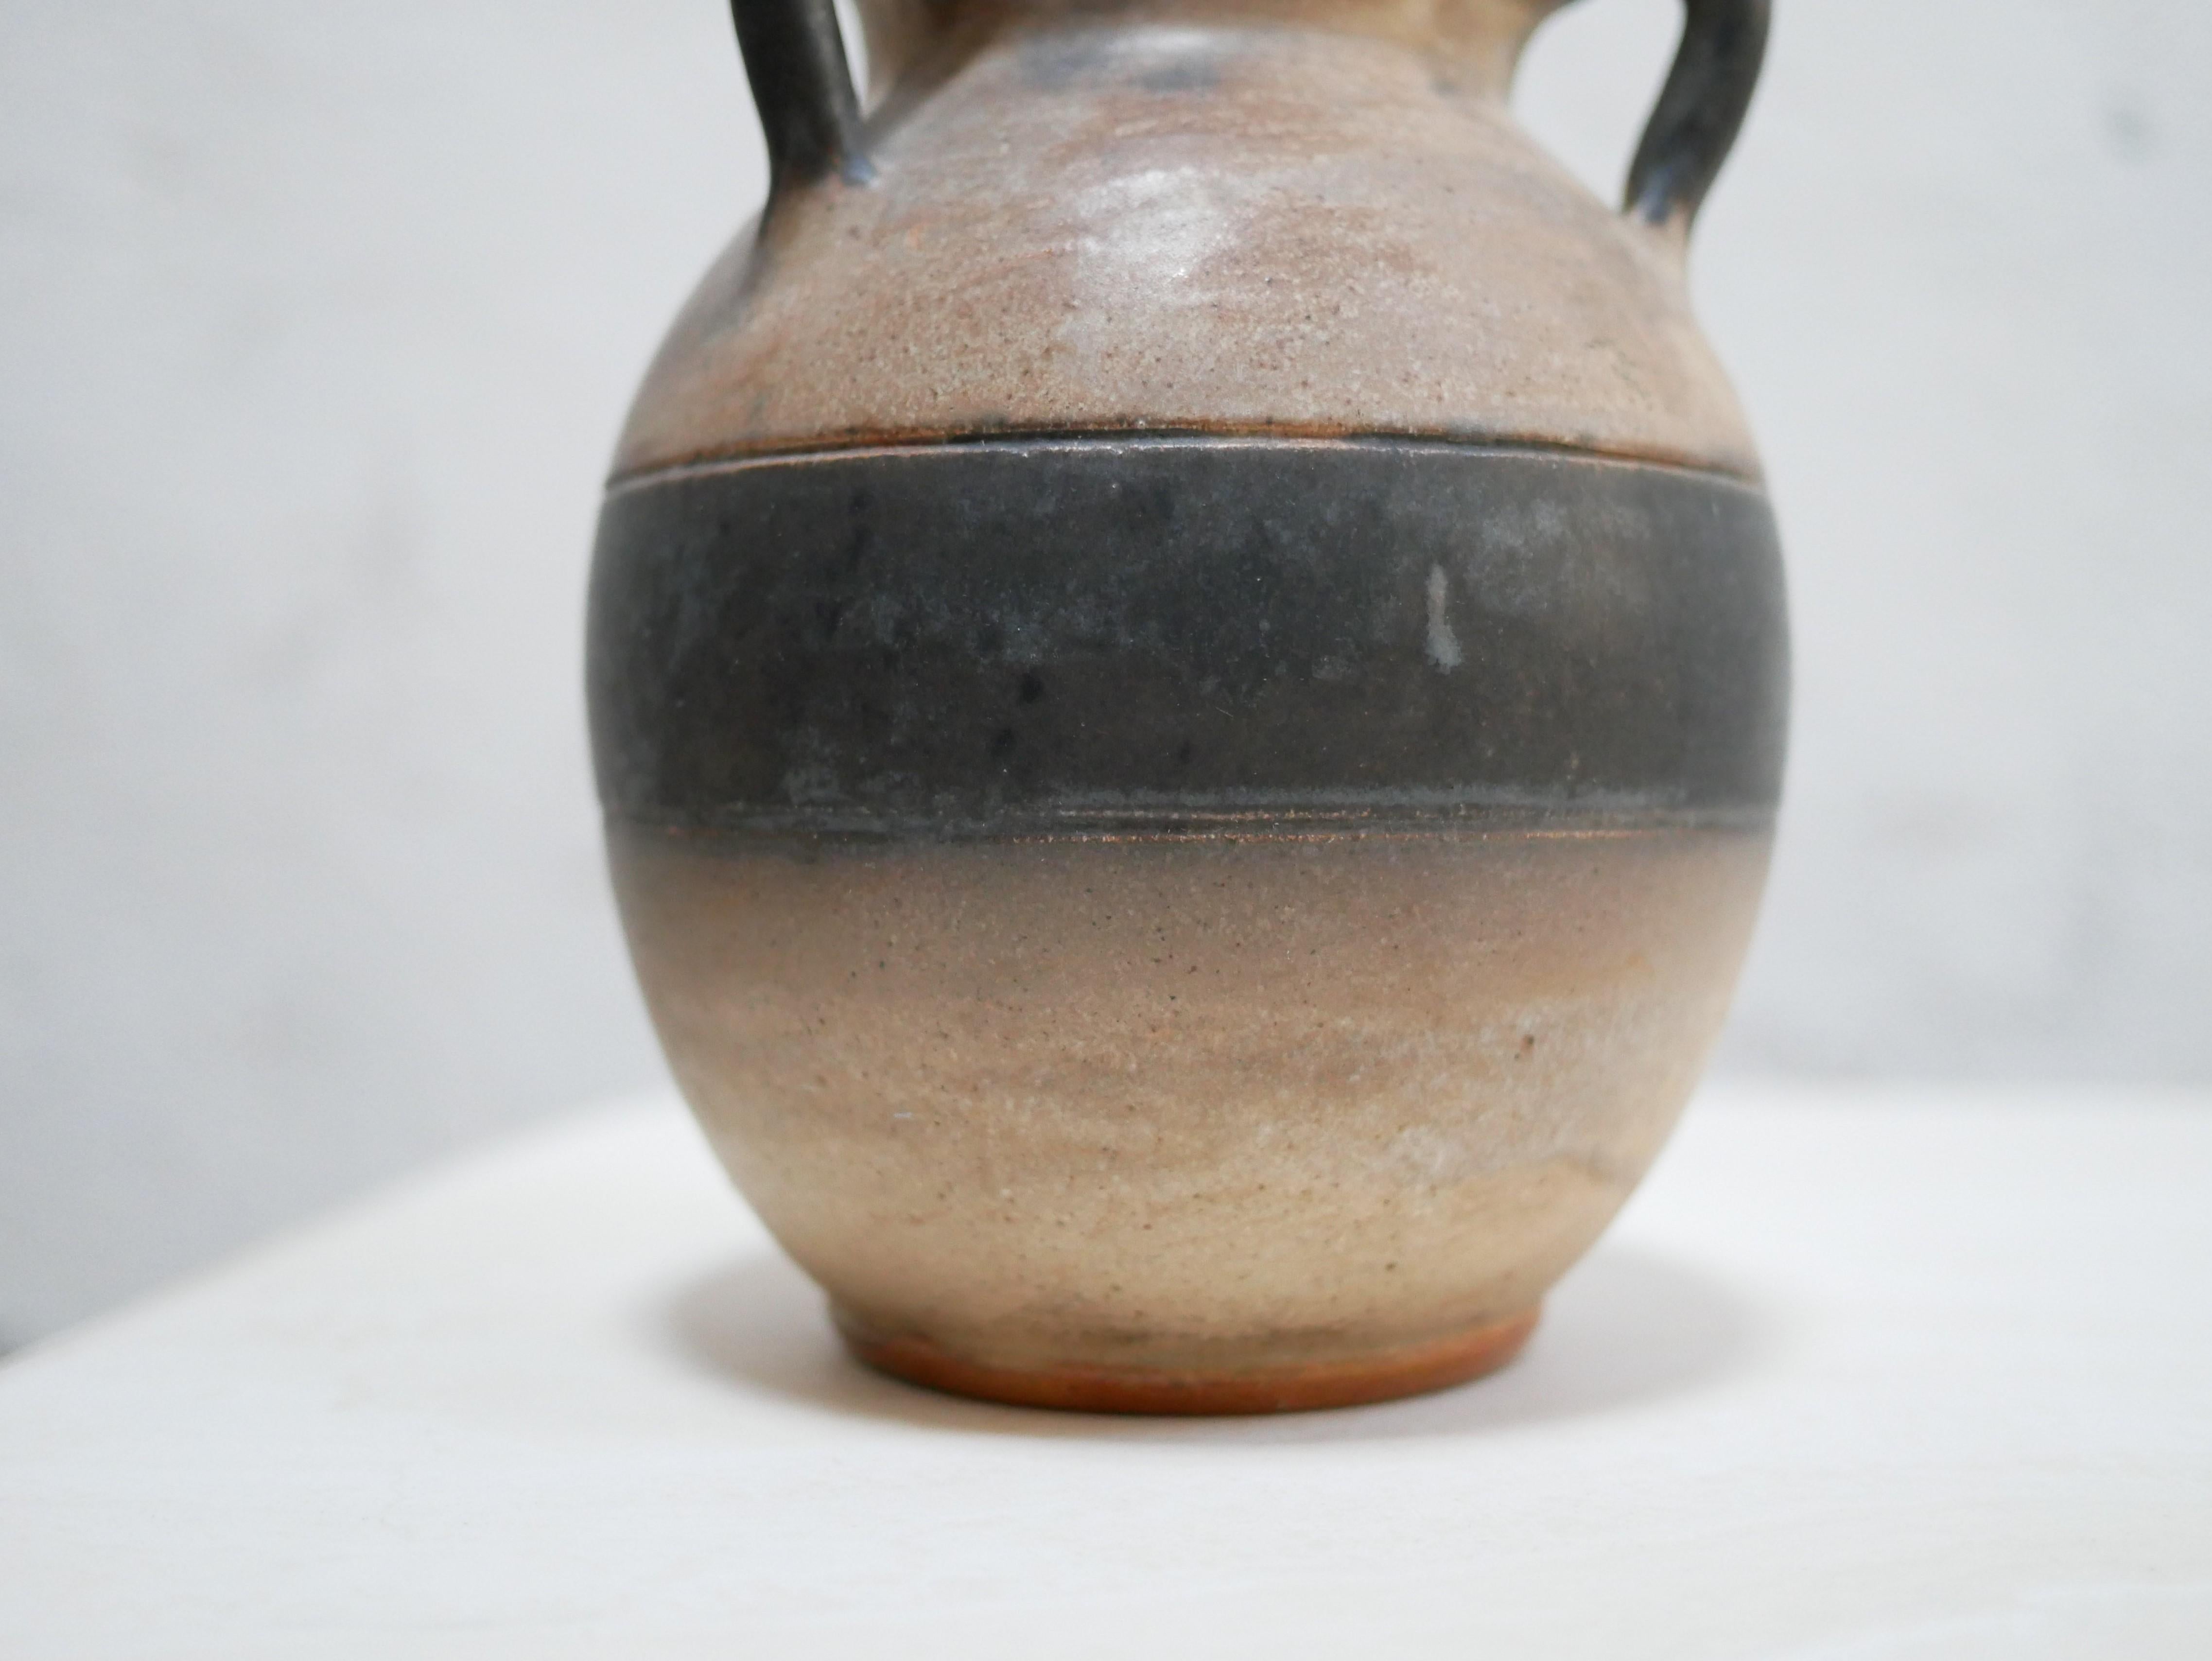 Vase en grès conçu par Willy Biron, Belgique, dans les années 1950.

Avec sa forme moderne et sa couleur minérale brute, cette céramique sera parfaite dans une décoration naturelle, raffinée et délicate.
On l'imagine simplement posé sur une étagère